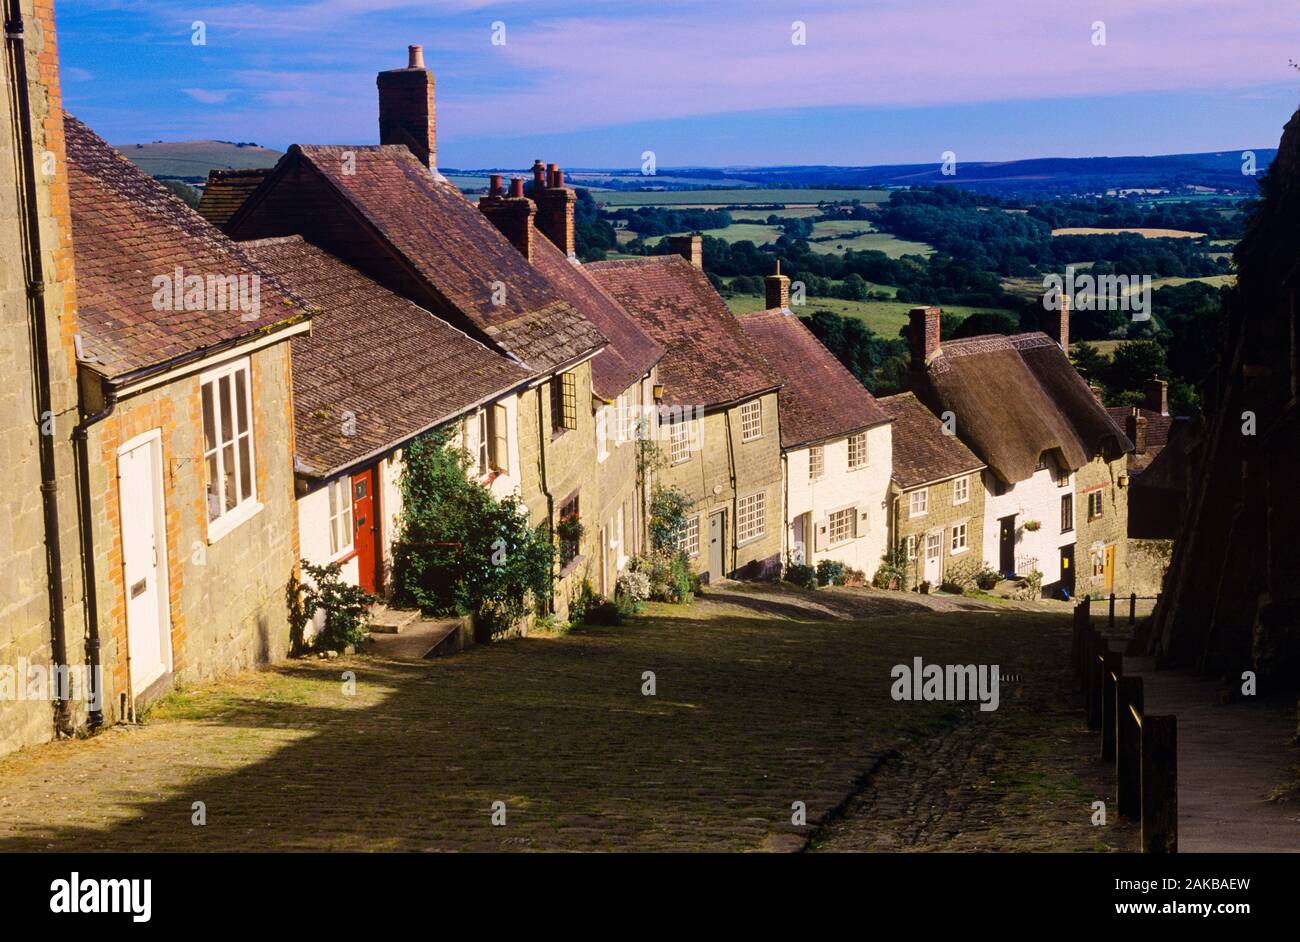 Vue de la ligne de maisons sur la colline, Shaftesbury, England, UK Banque D'Images